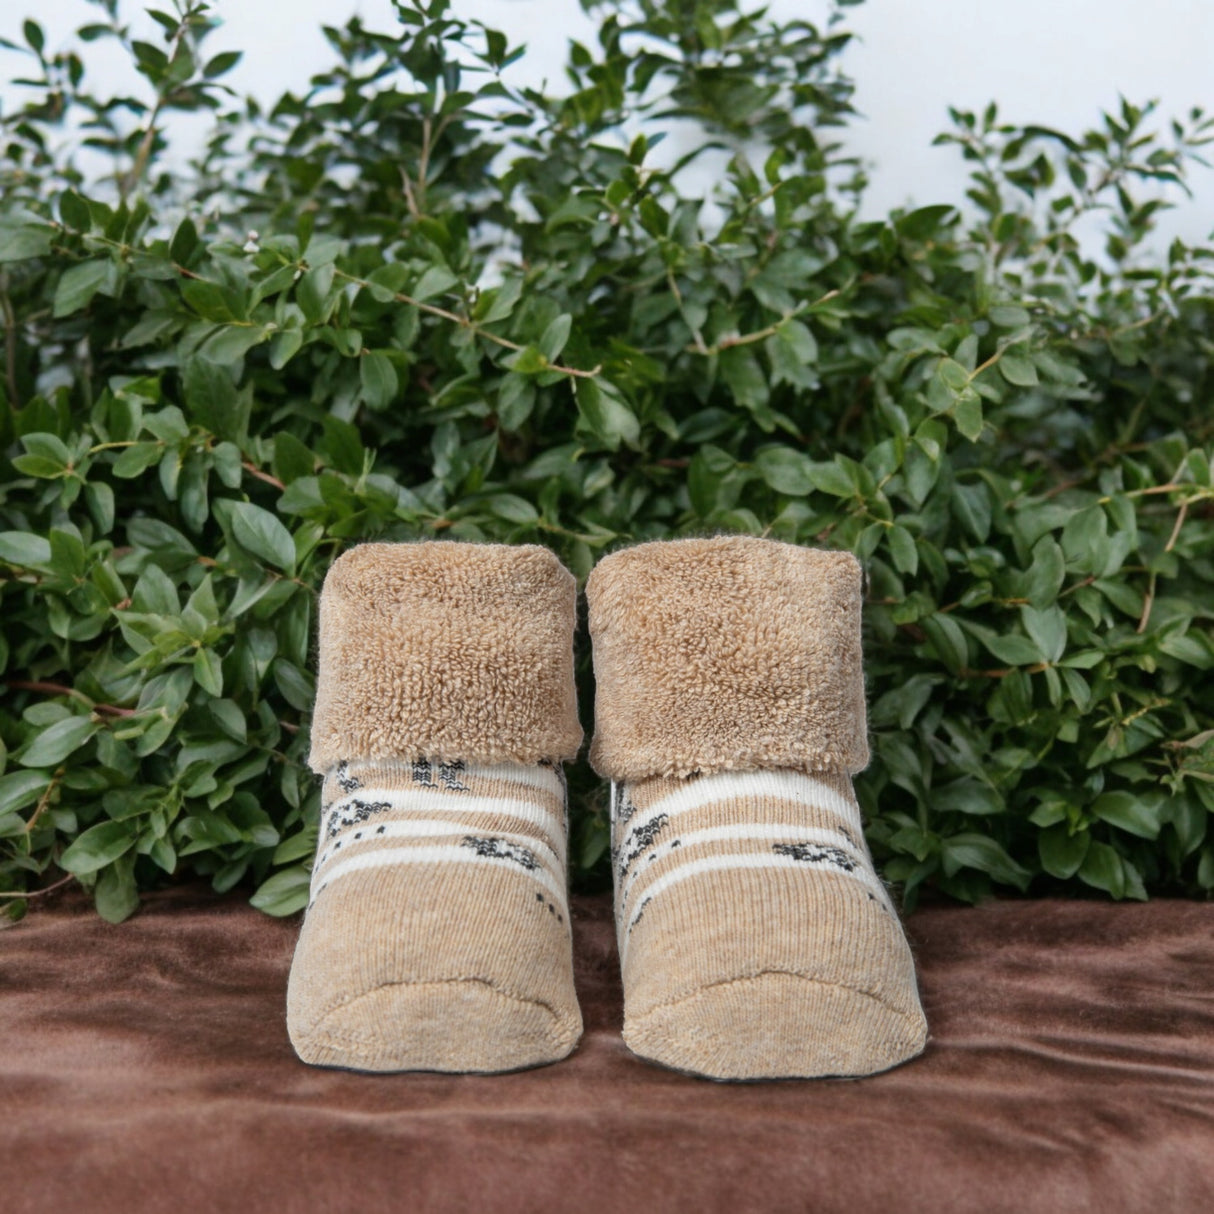 Zebra Socken Cucamelon Kuschelsocken für Mama und Baby in 38-40 und für Neugeborene (2 Paare)